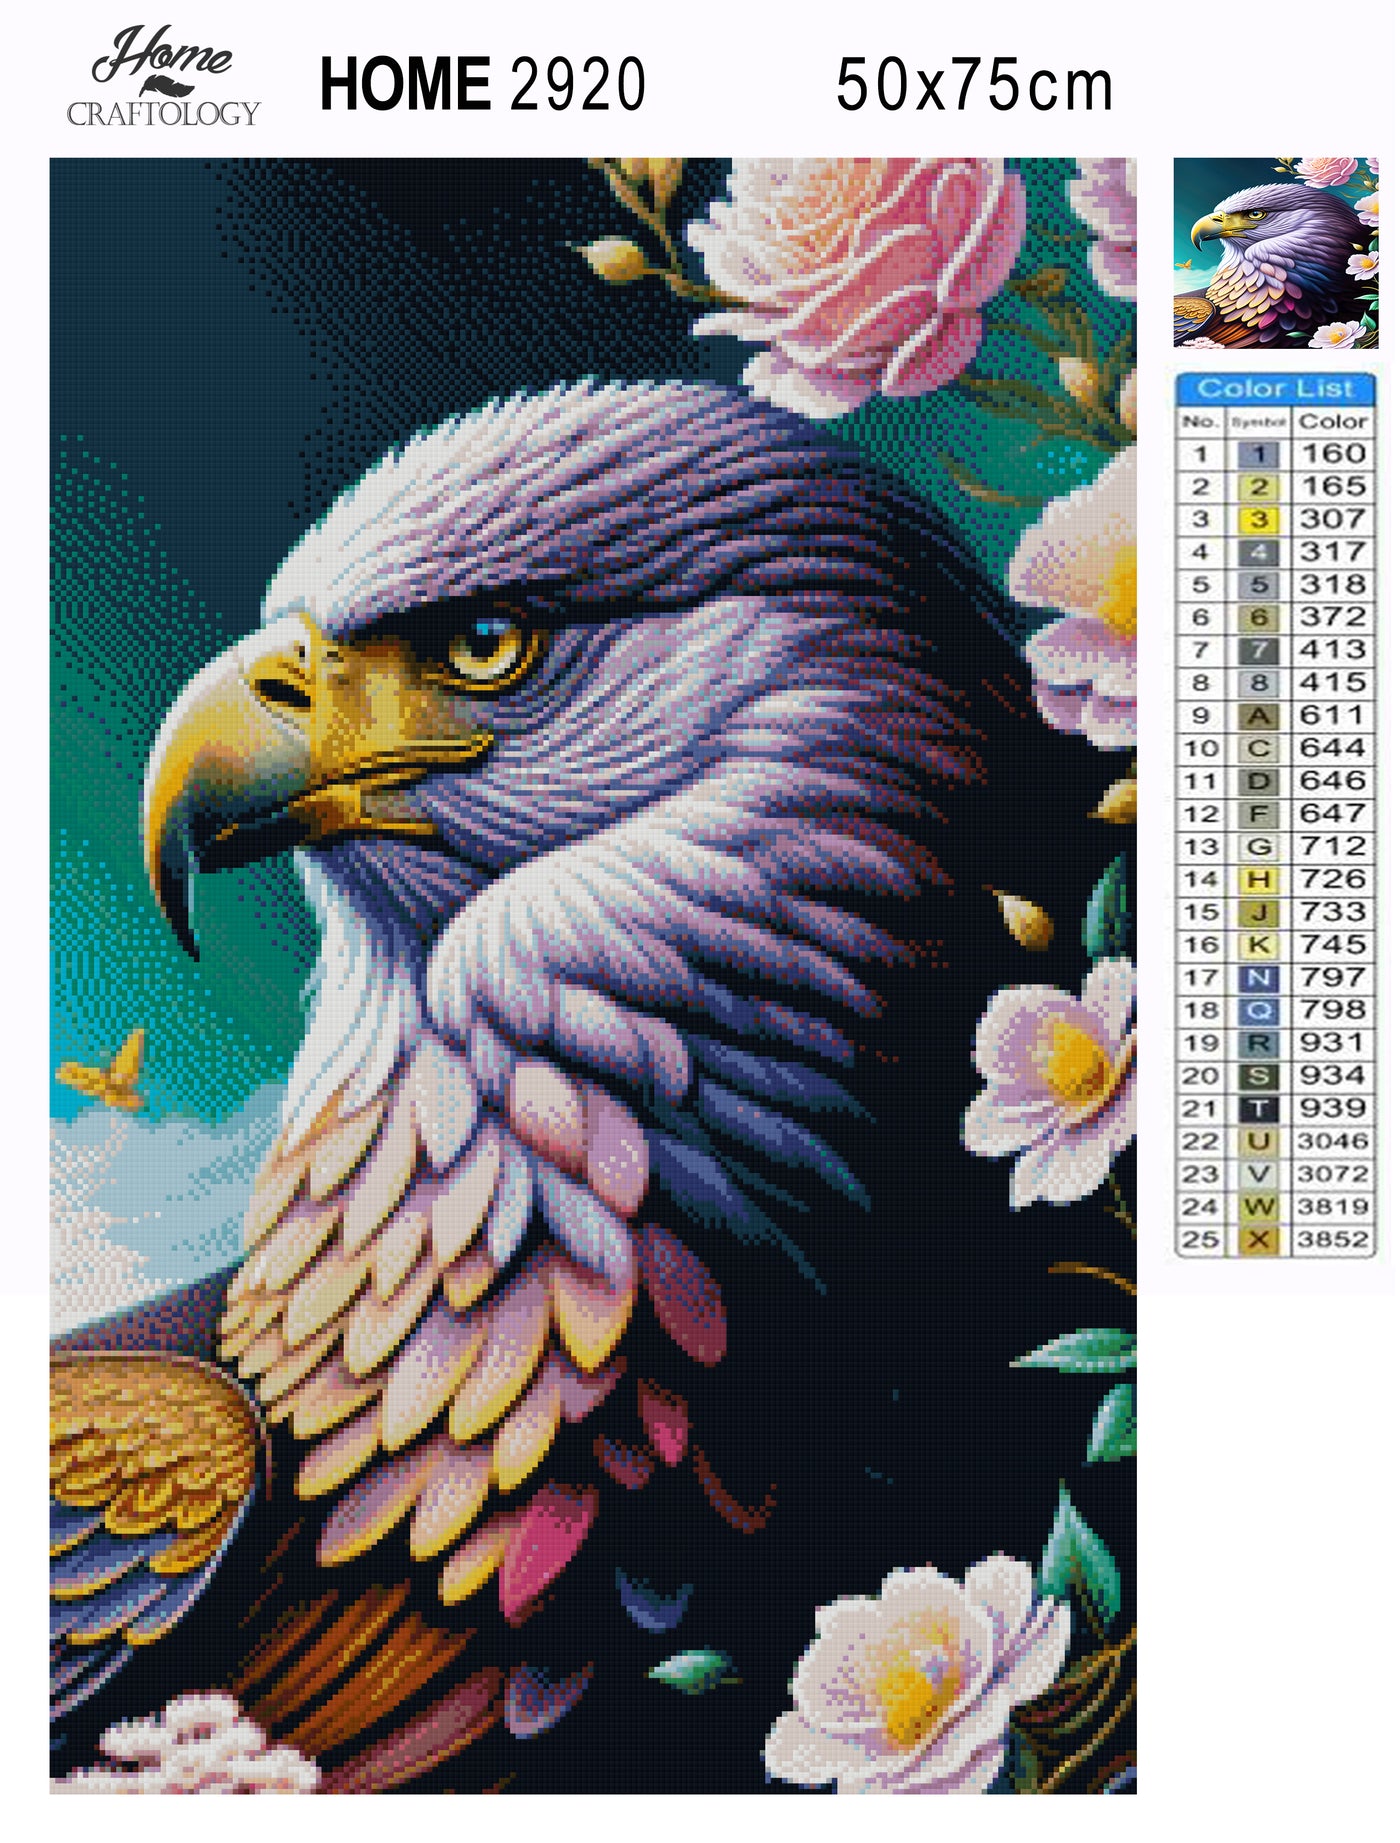 Eagle and Flowers - Premium Diamond Painting Kit